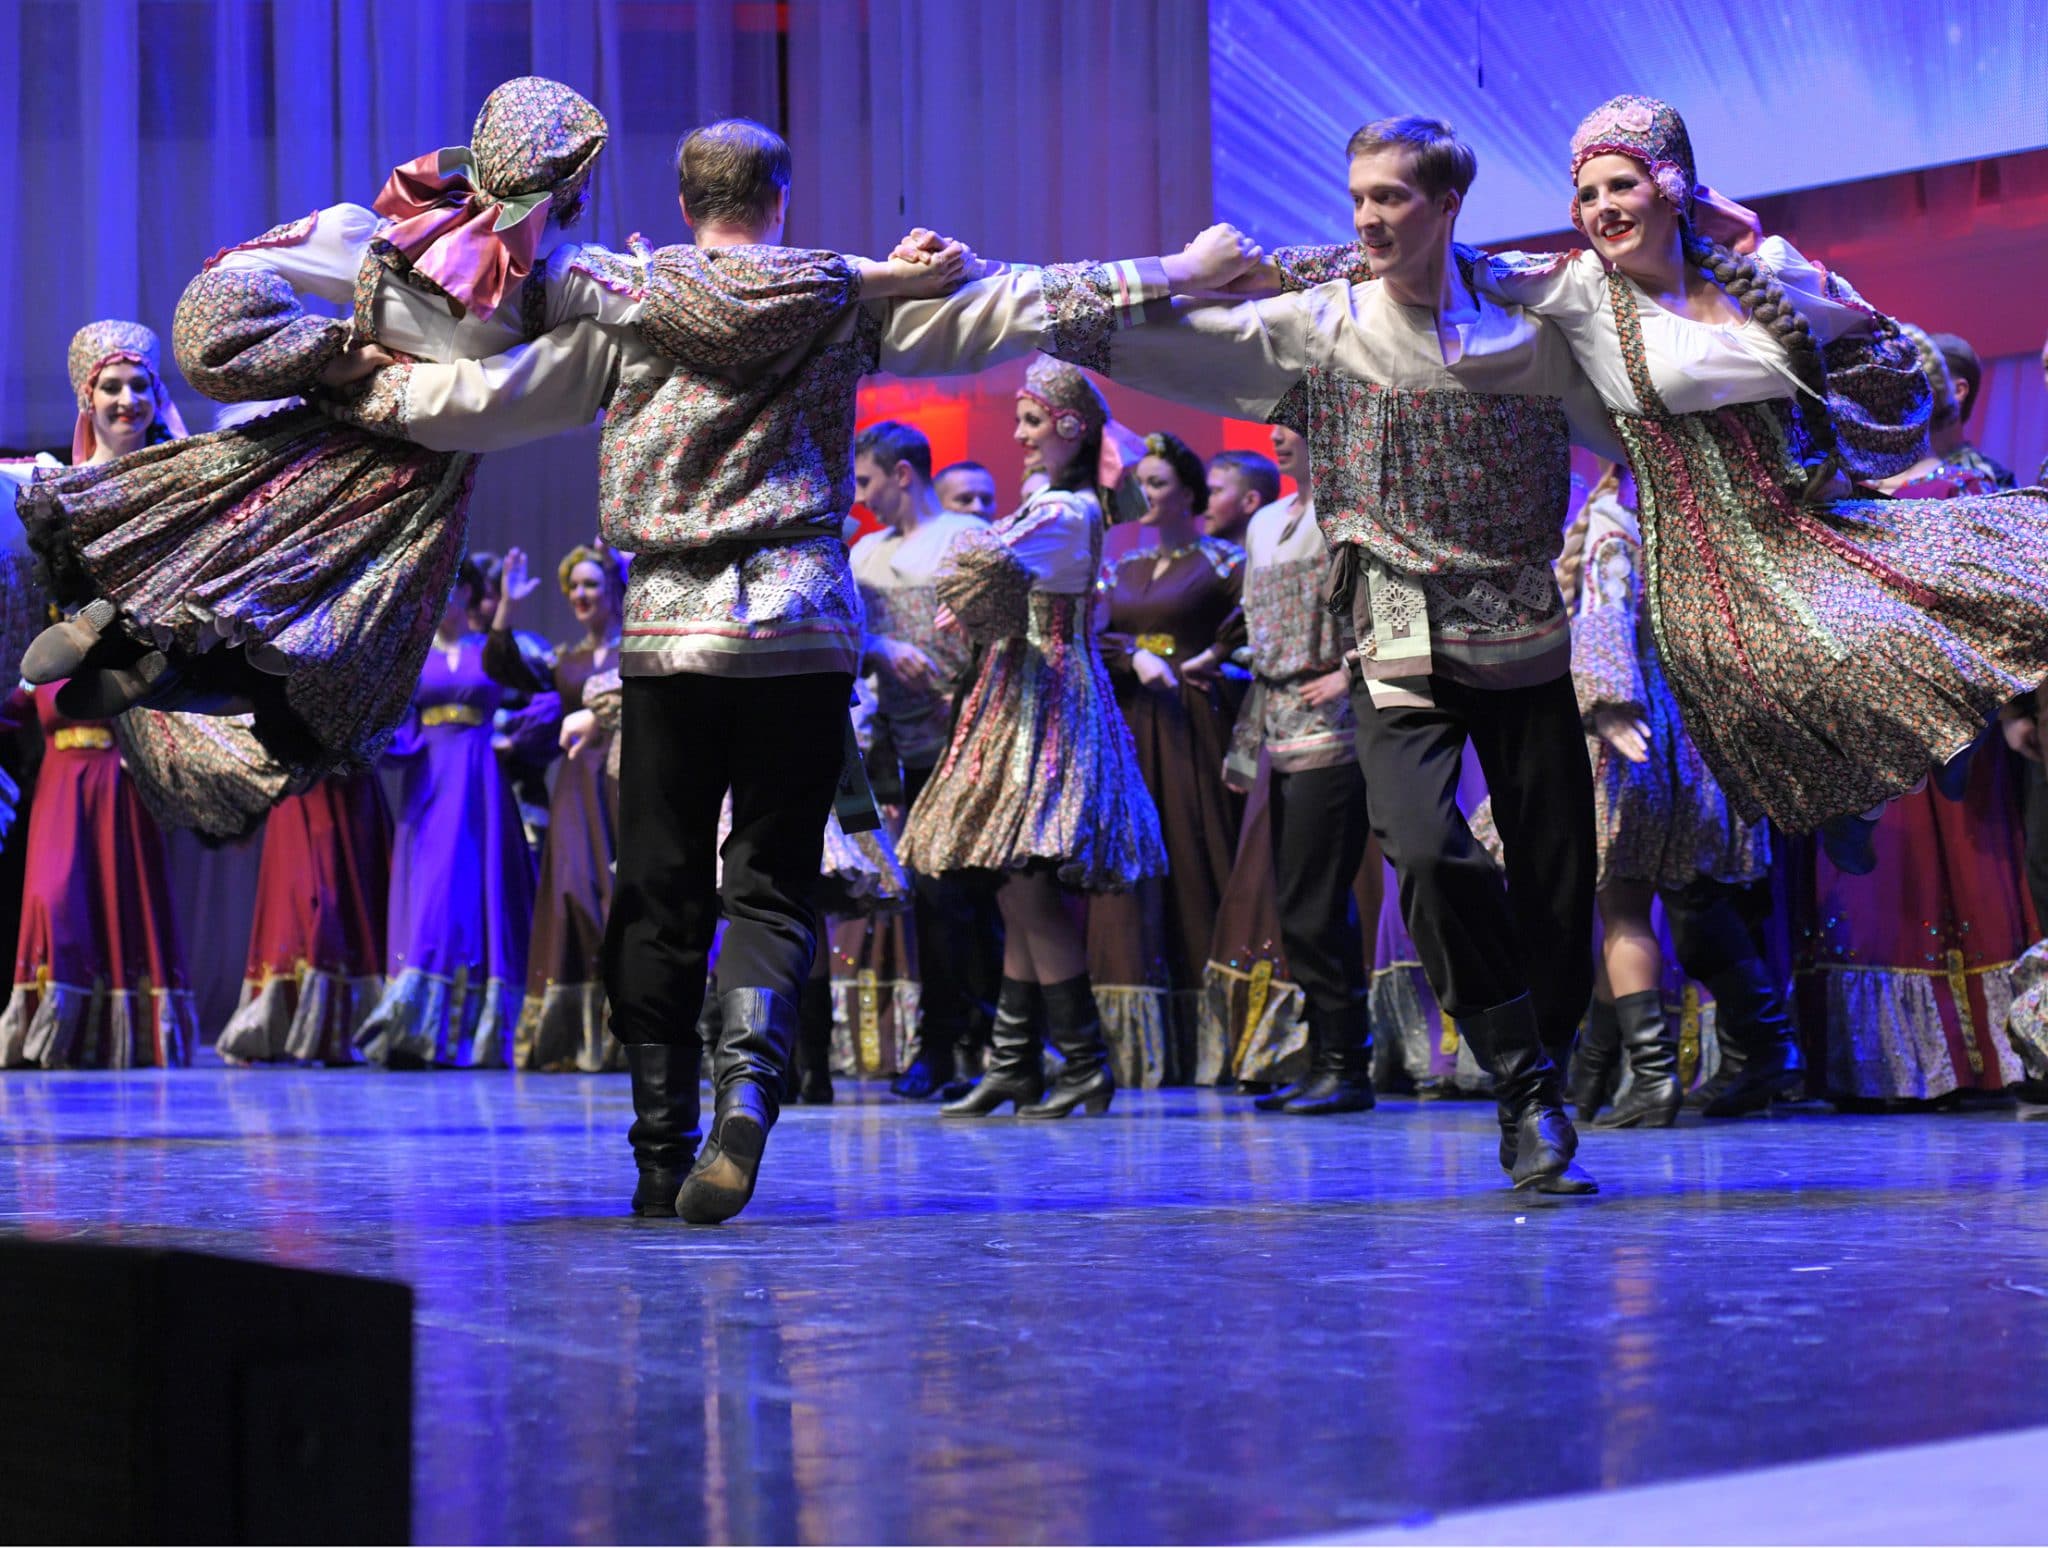 «Песни великого края»: Сибирский хор выступил в районах Новосибирской области и в Омске